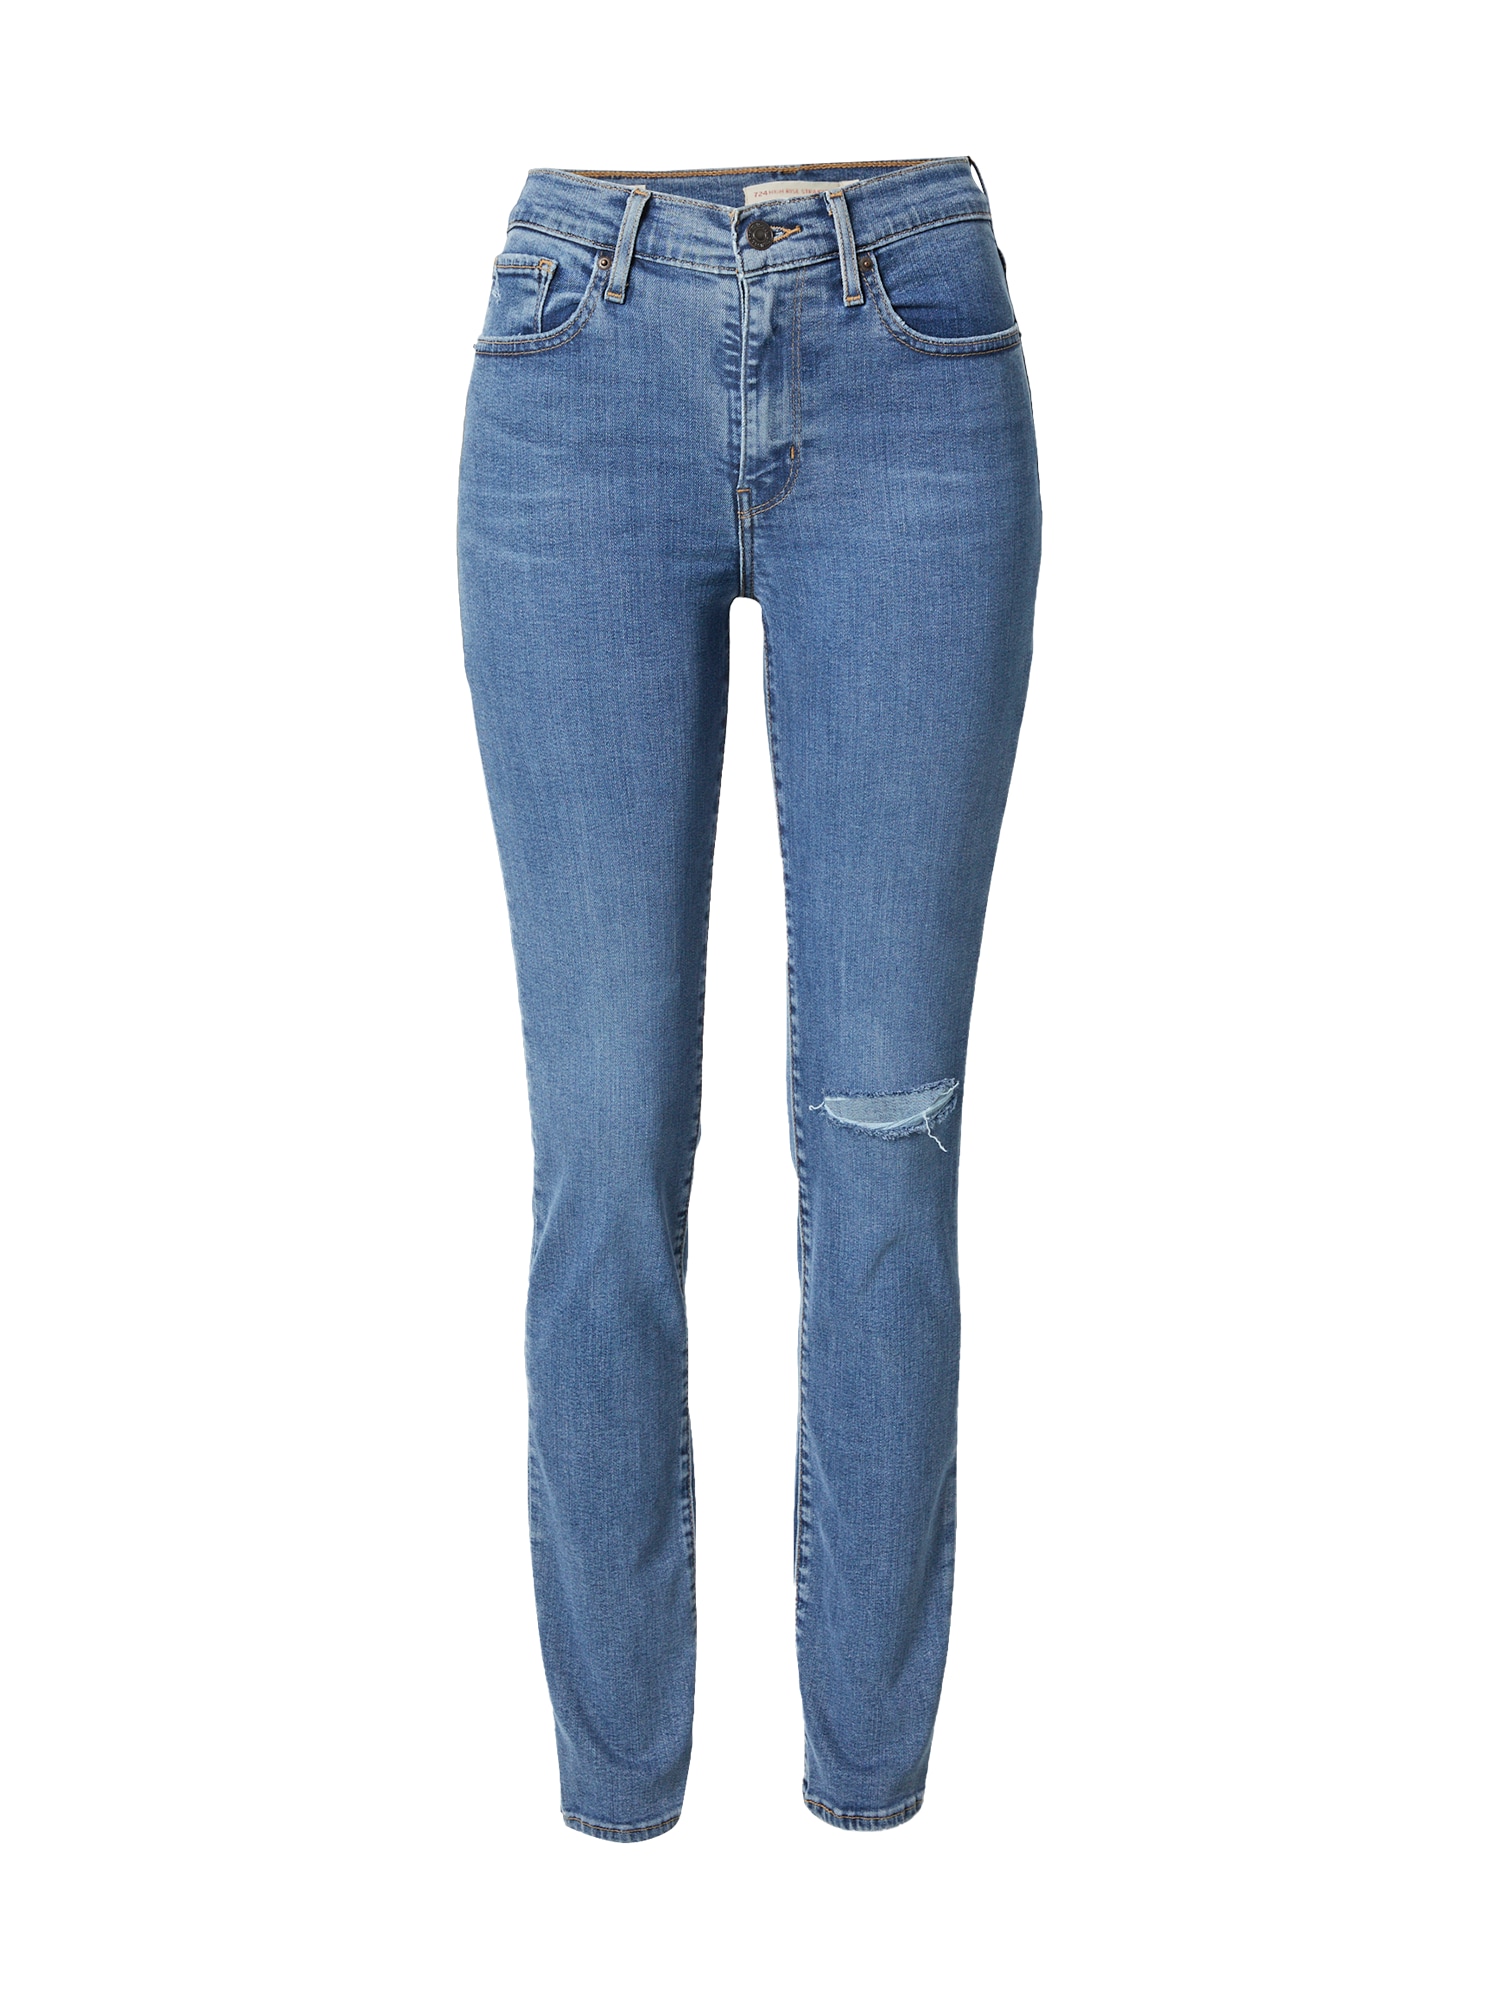 Jeans '724™ HIGH RISE STRAIGHT' von Levis